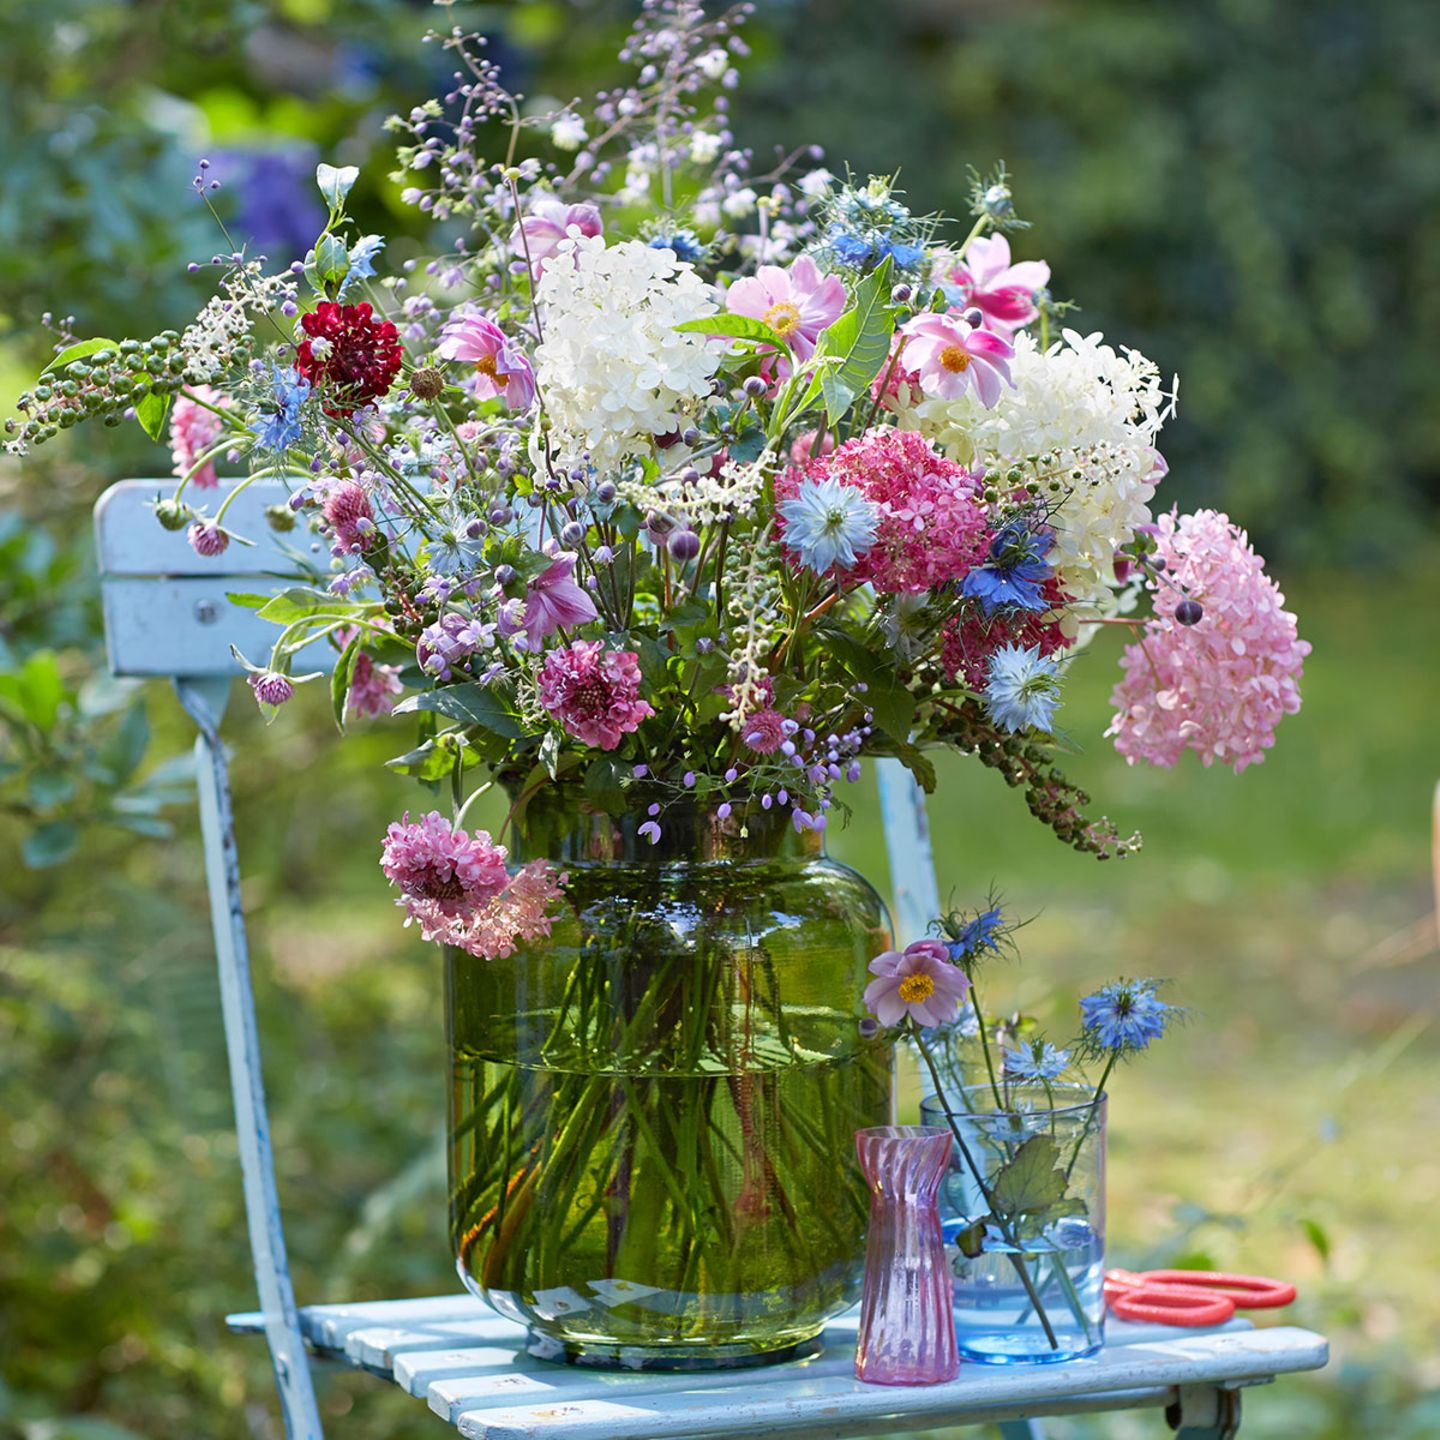 Blumenstrauss mit Hortensien, Wiesenrauten und Klee